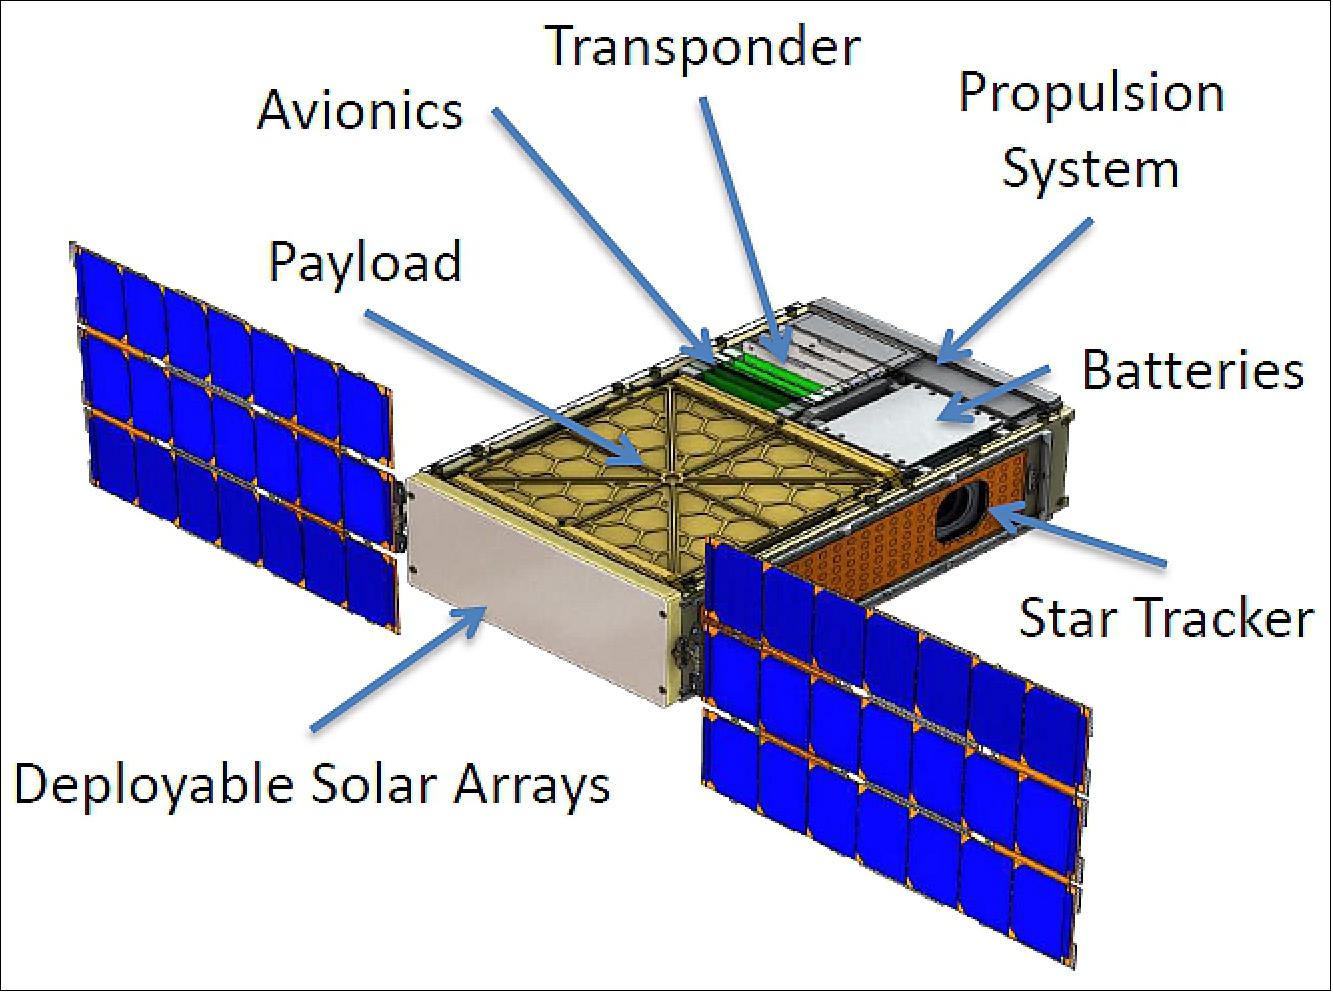 Figure 2: Illustration of the deployed BioSentinel 6U nanosatellite (image credit: NASA/ARC)